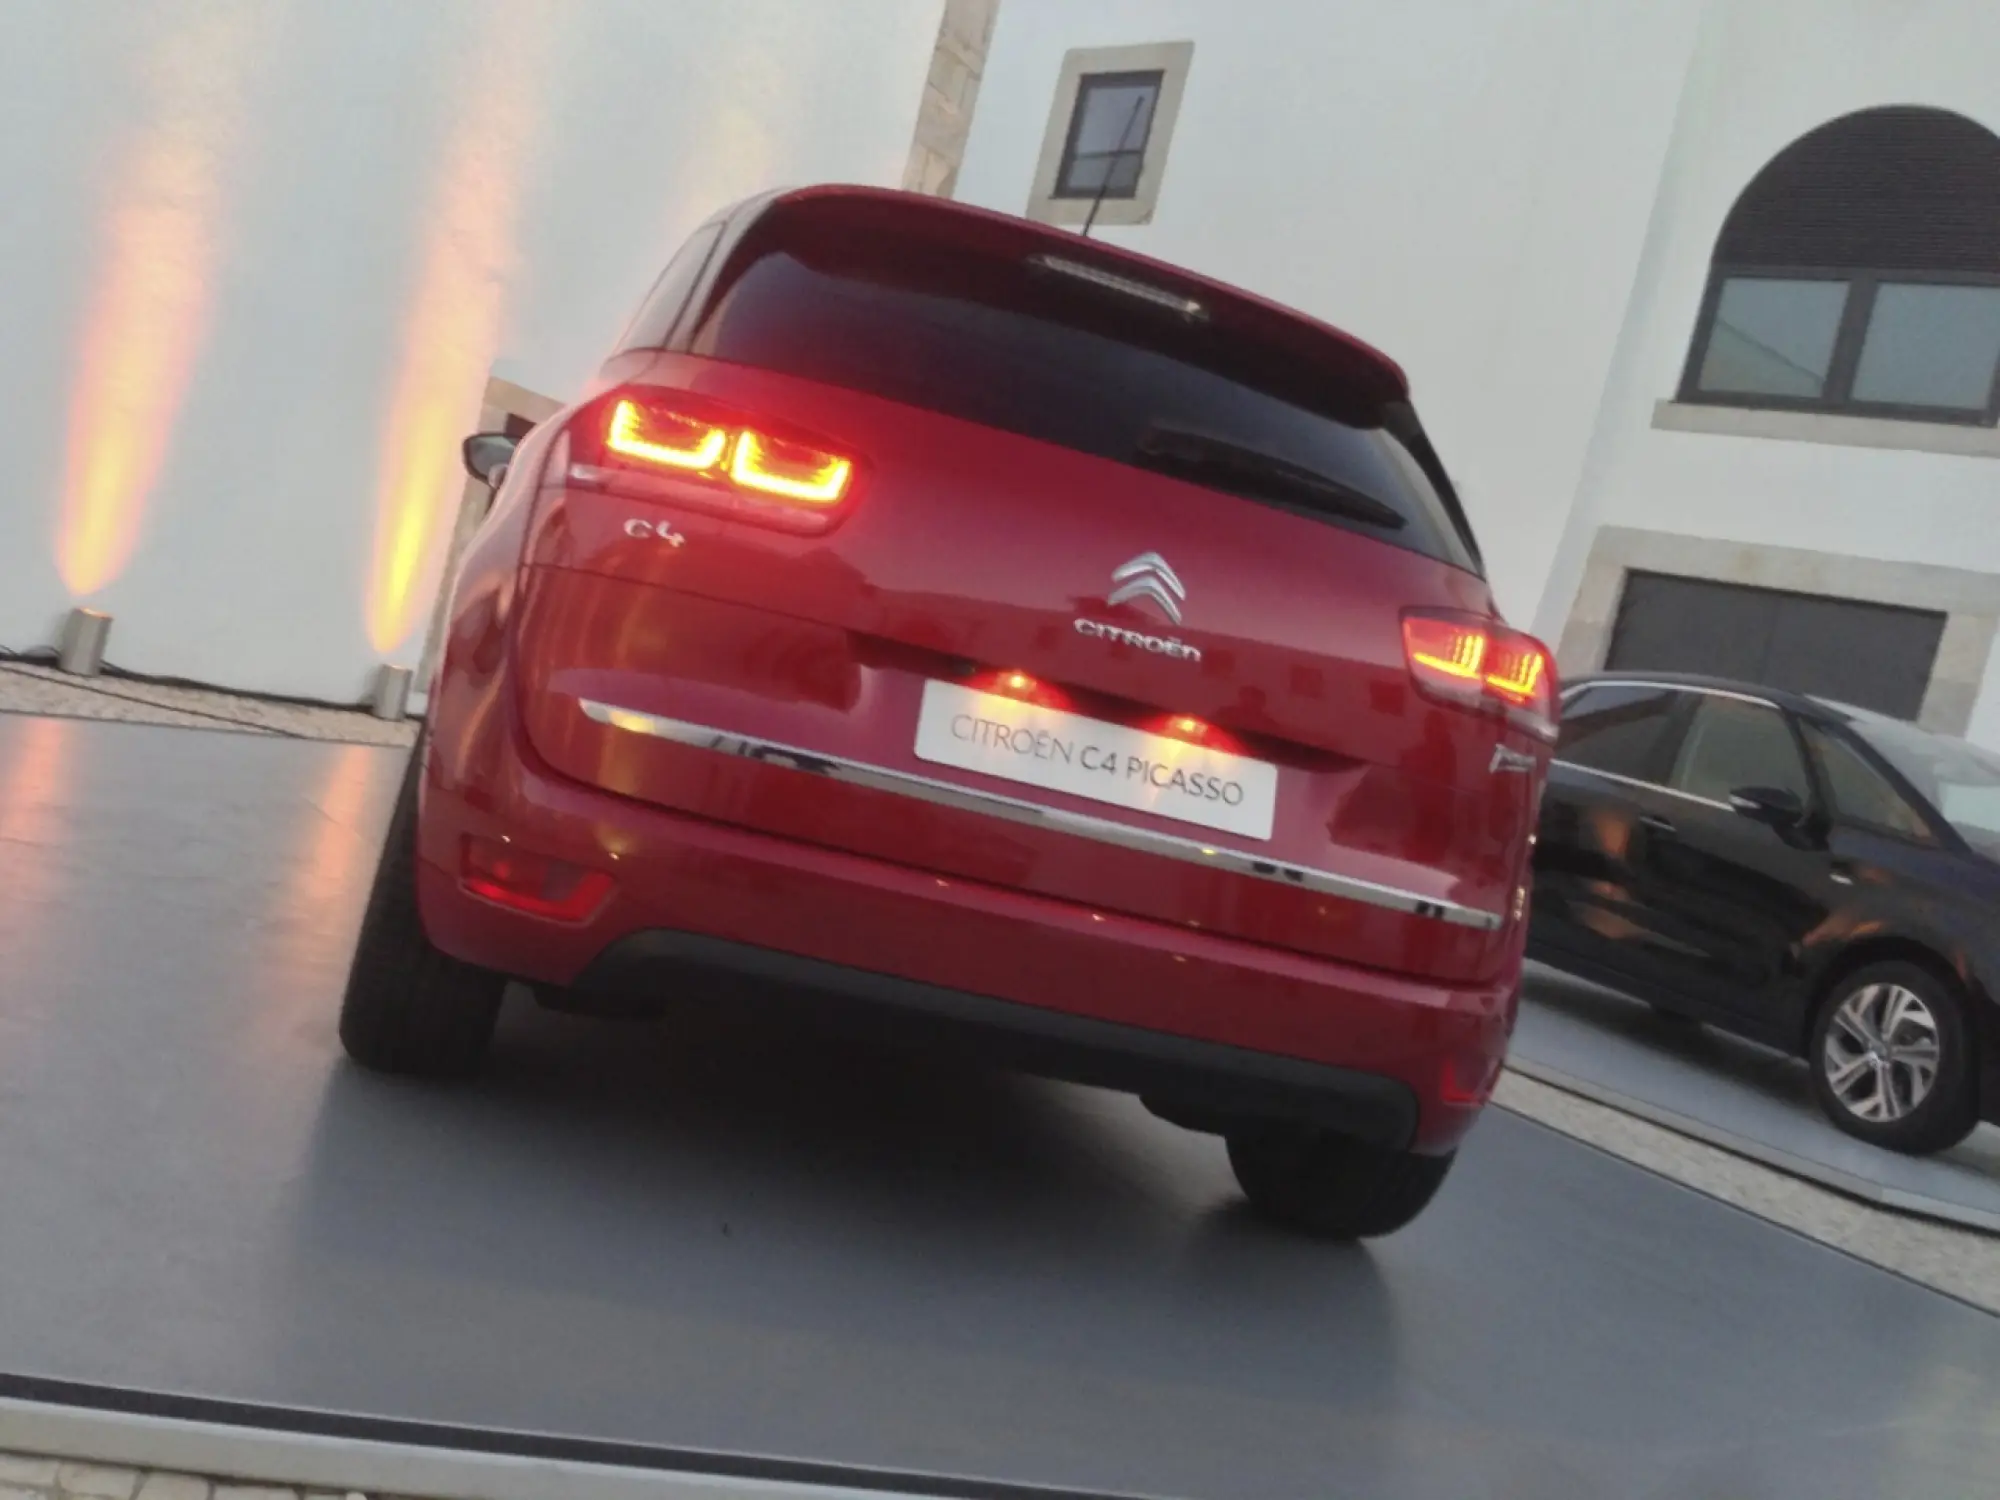 Citroën C4 Picasso 2013 - Prime impressioni - 30